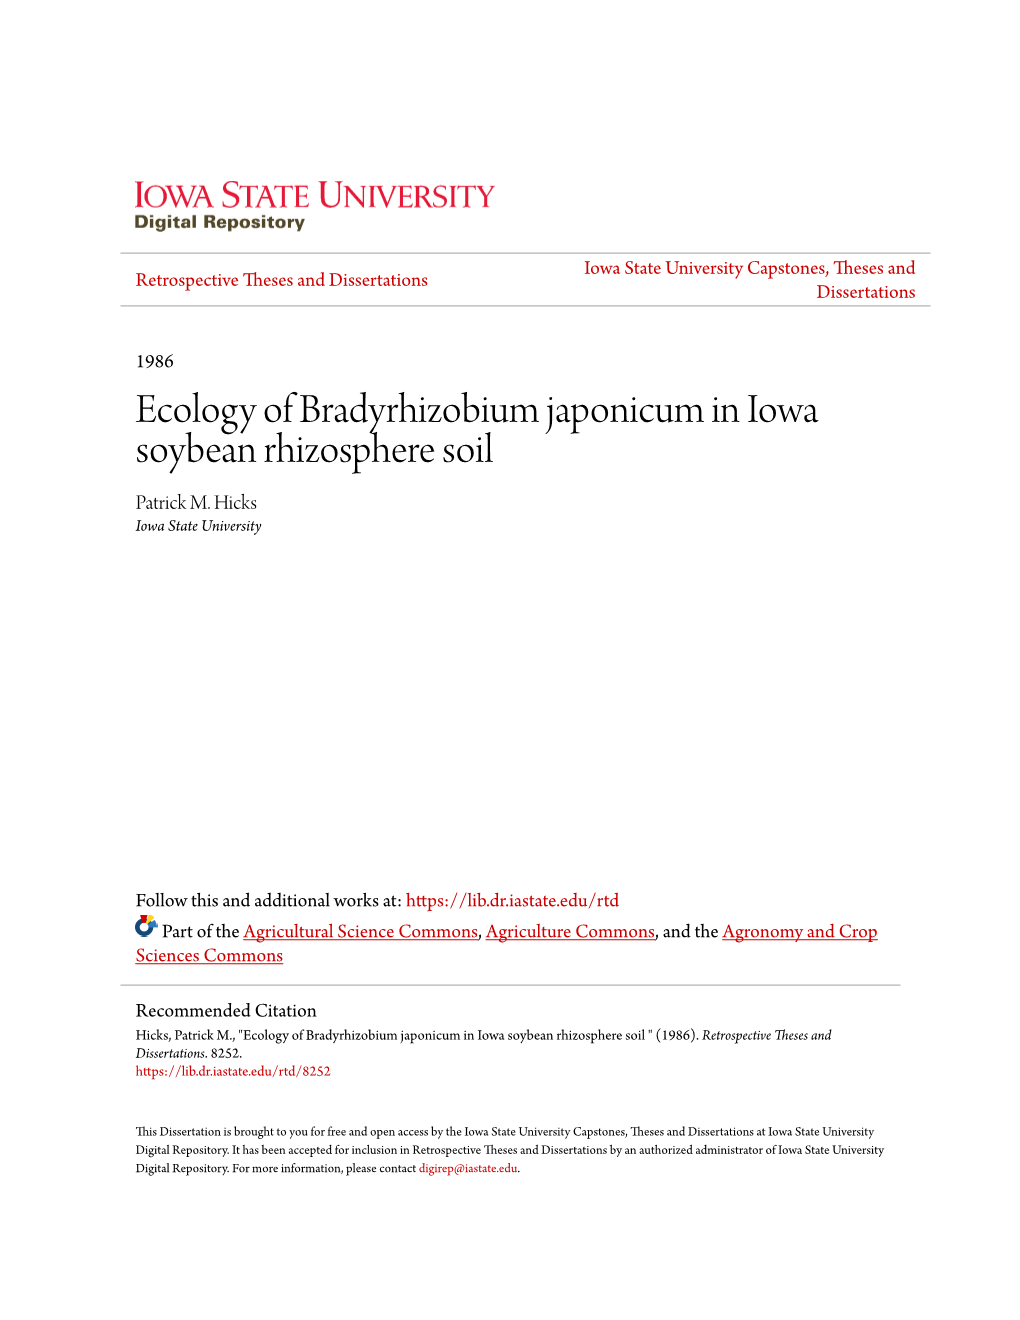 Ecology of Bradyrhizobium Japonicum in Iowa Soybean Rhizosphere Soil Patrick M